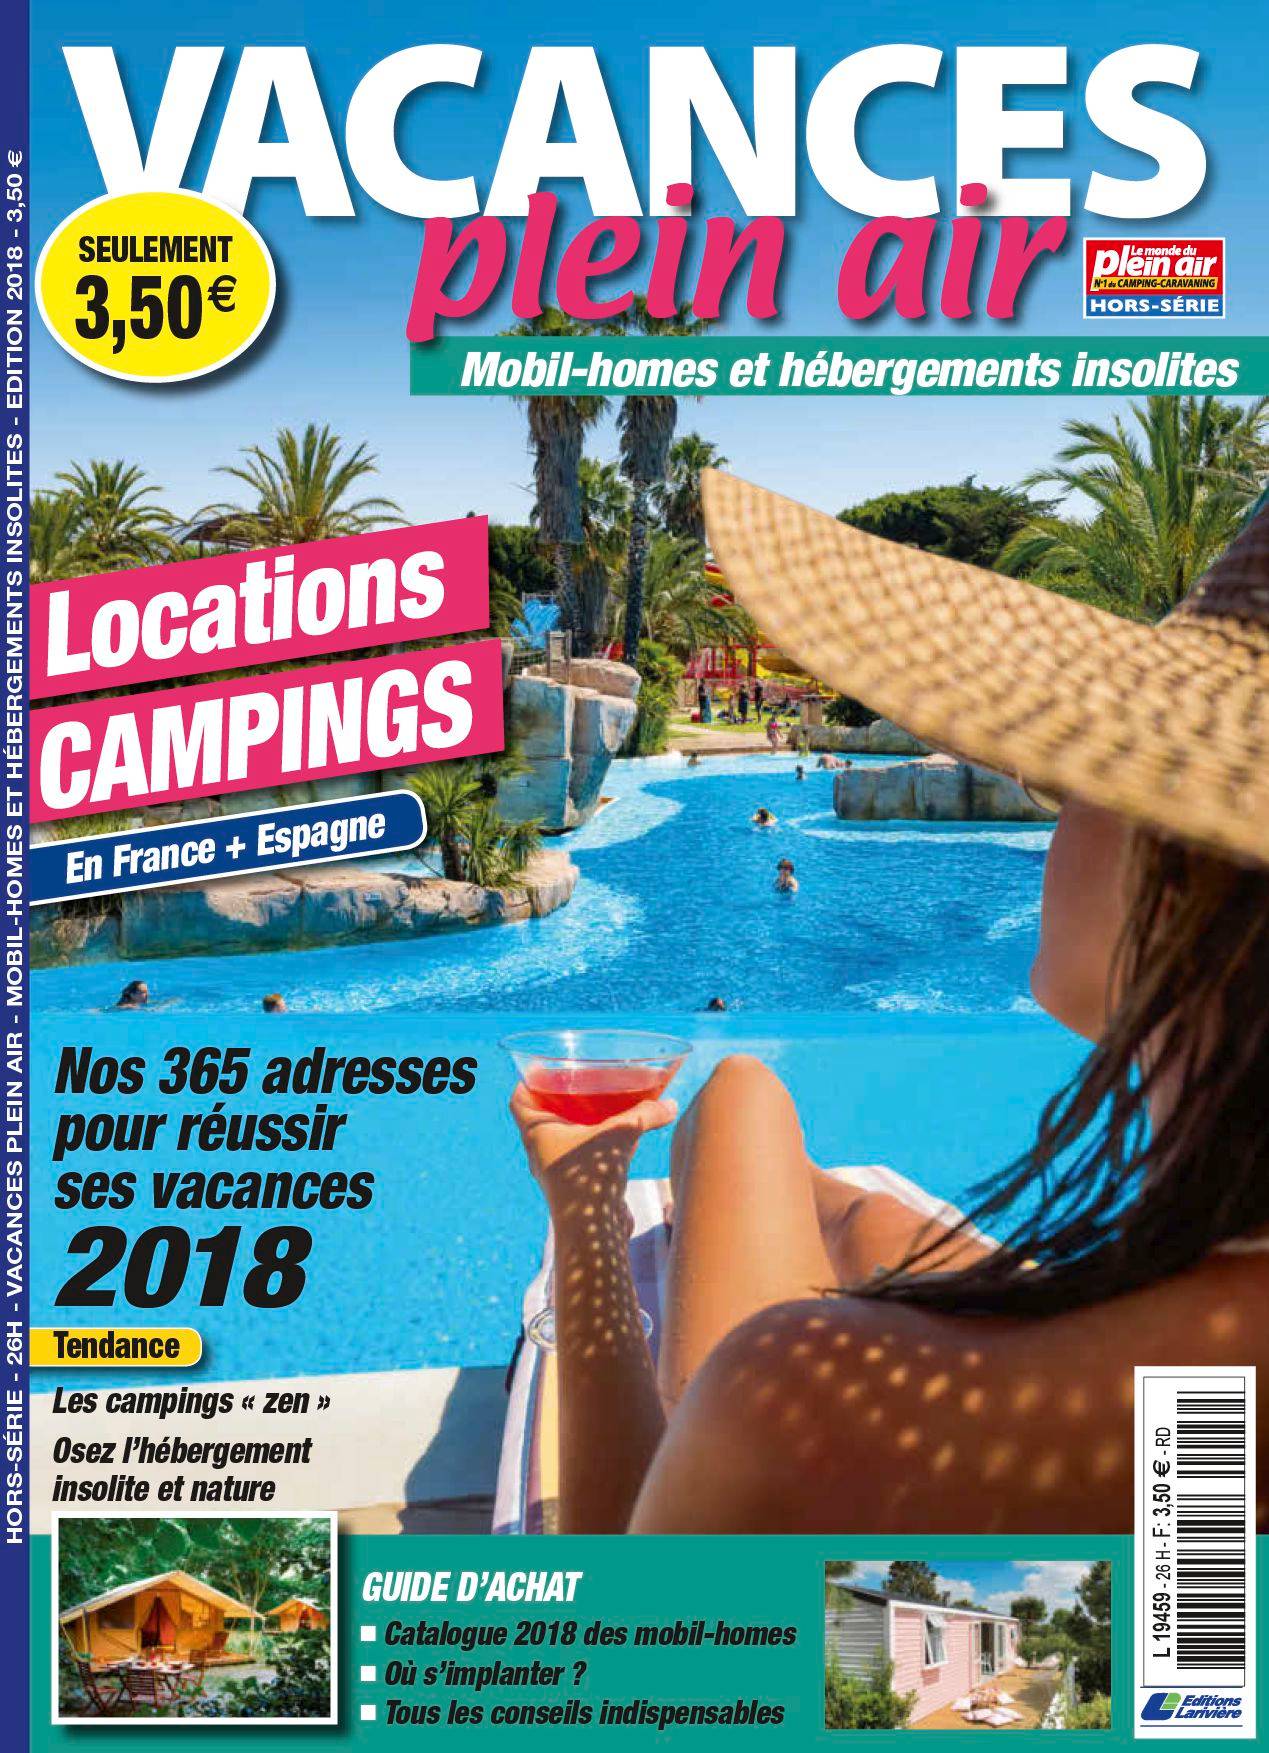 Vacances en plein air 2018